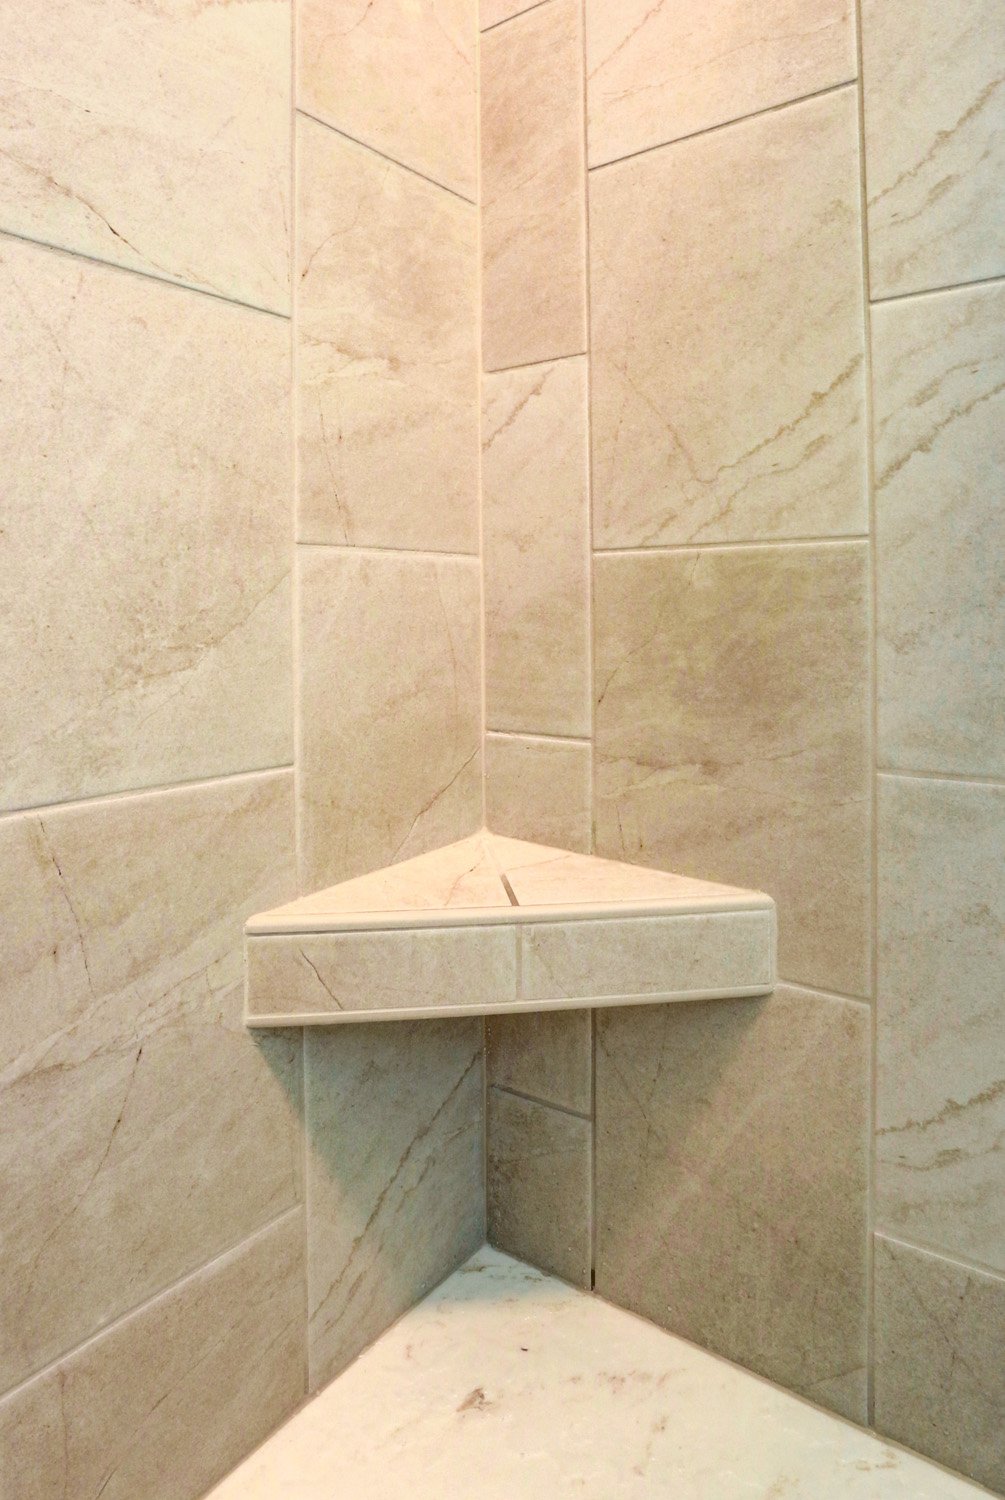 Tile shower walls with shelf in Landisville Bathroom Remodel